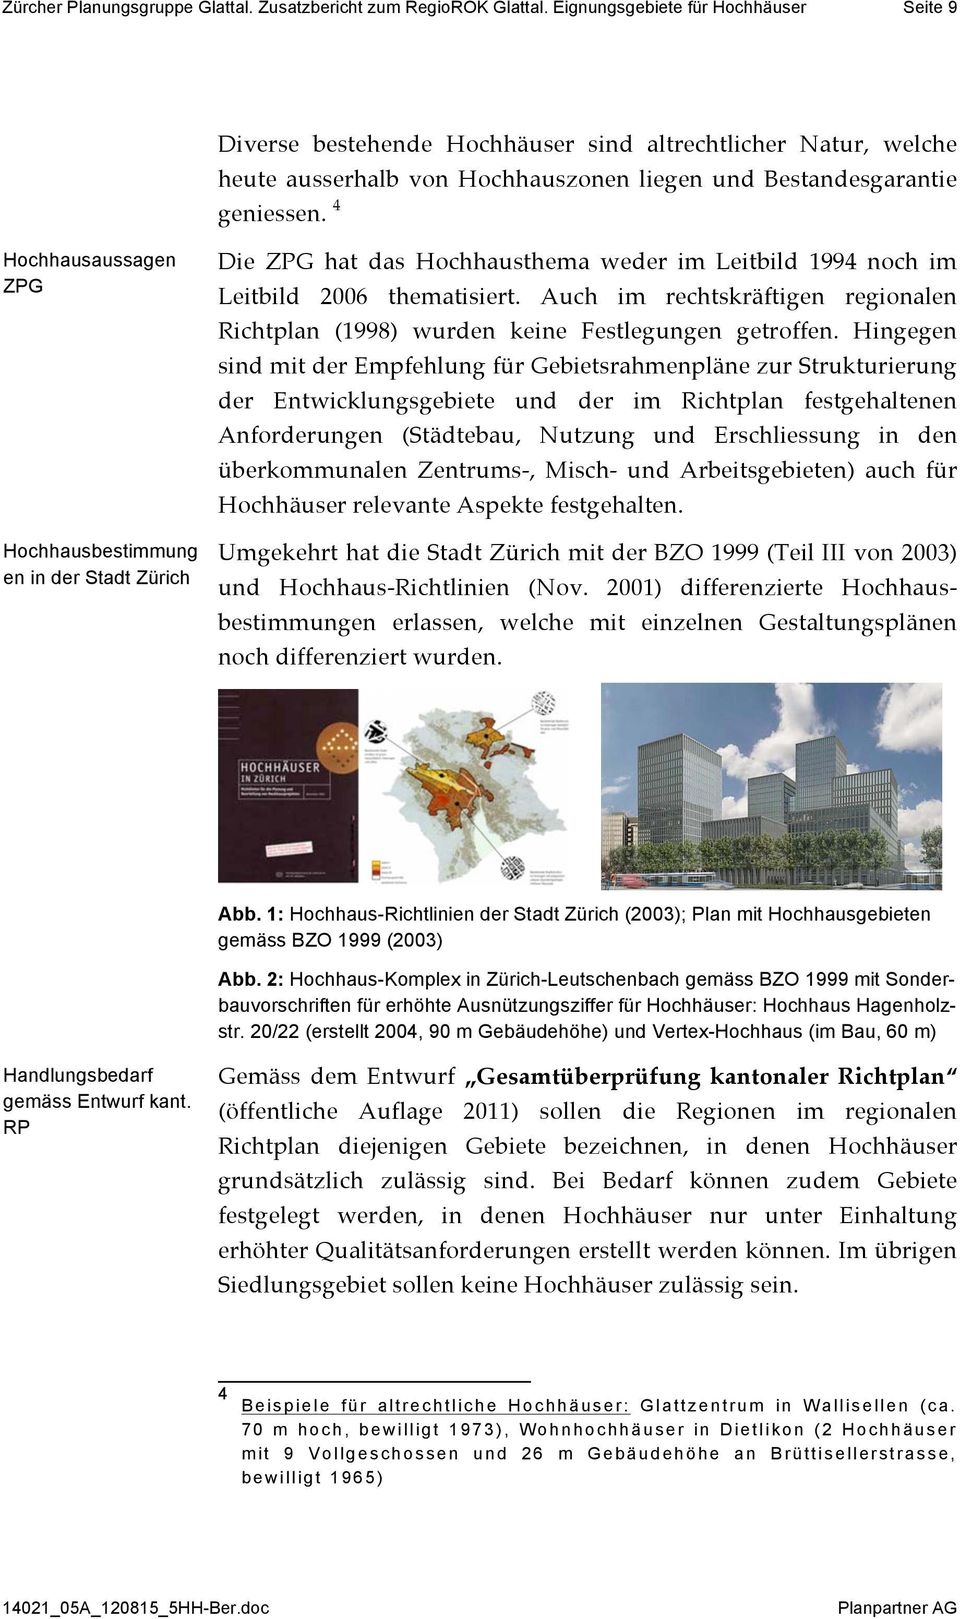 4 Hochhausaussagen ZPG Hochhausbestimmung en in der Stadt Zürich Die ZPG hat das Hochhausthema weder im Leitbild 1994 noch im Leitbild 2006 thematisiert.